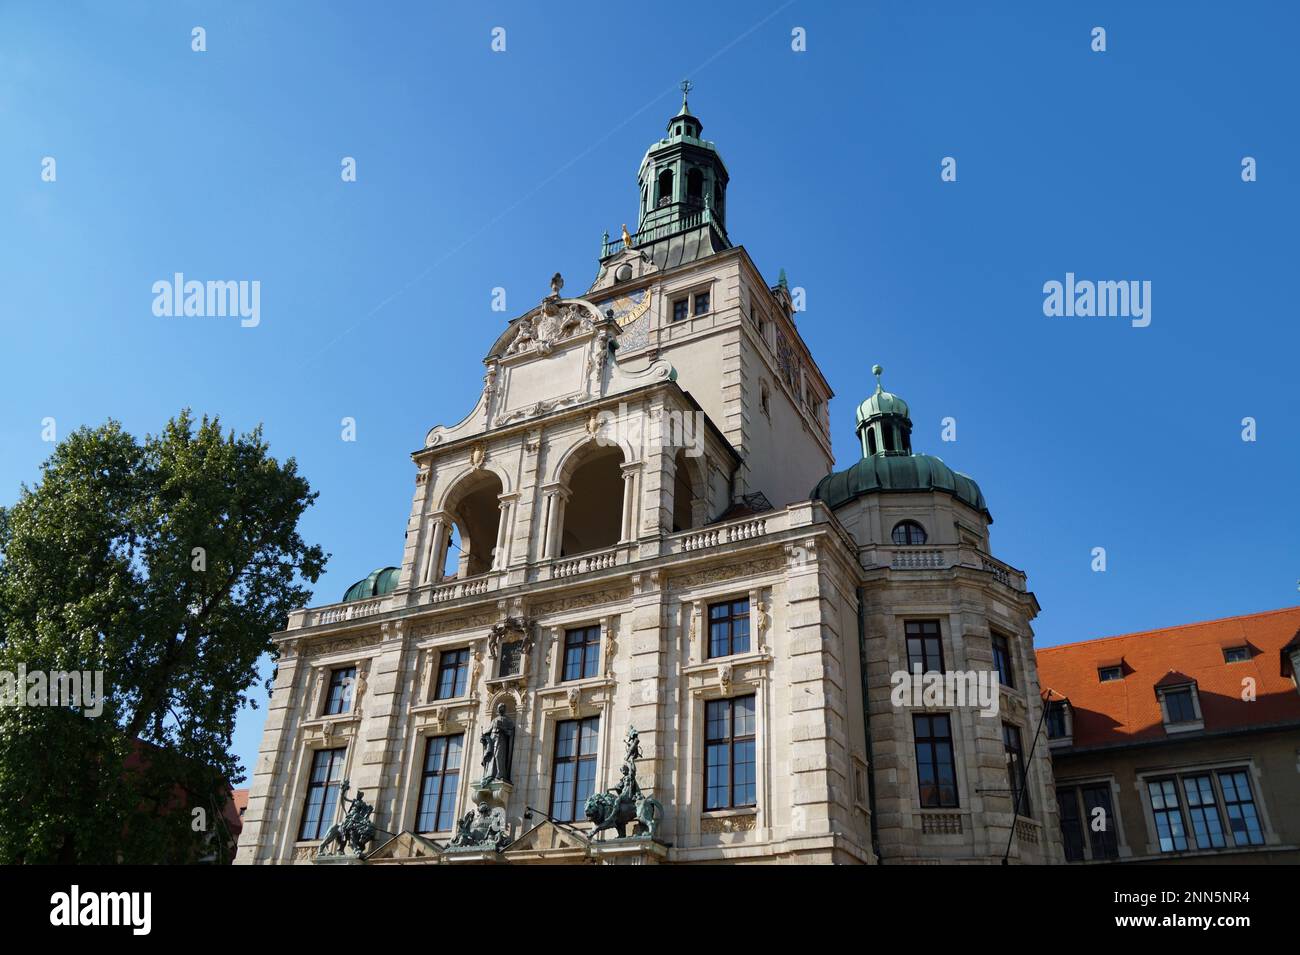 Le Musée national bavarois (Bayerisches Nationalmuseum) est l'un des plus importants musées d'arts décoratifs en Europe et l'un des plus grands musées d'art. Banque D'Images